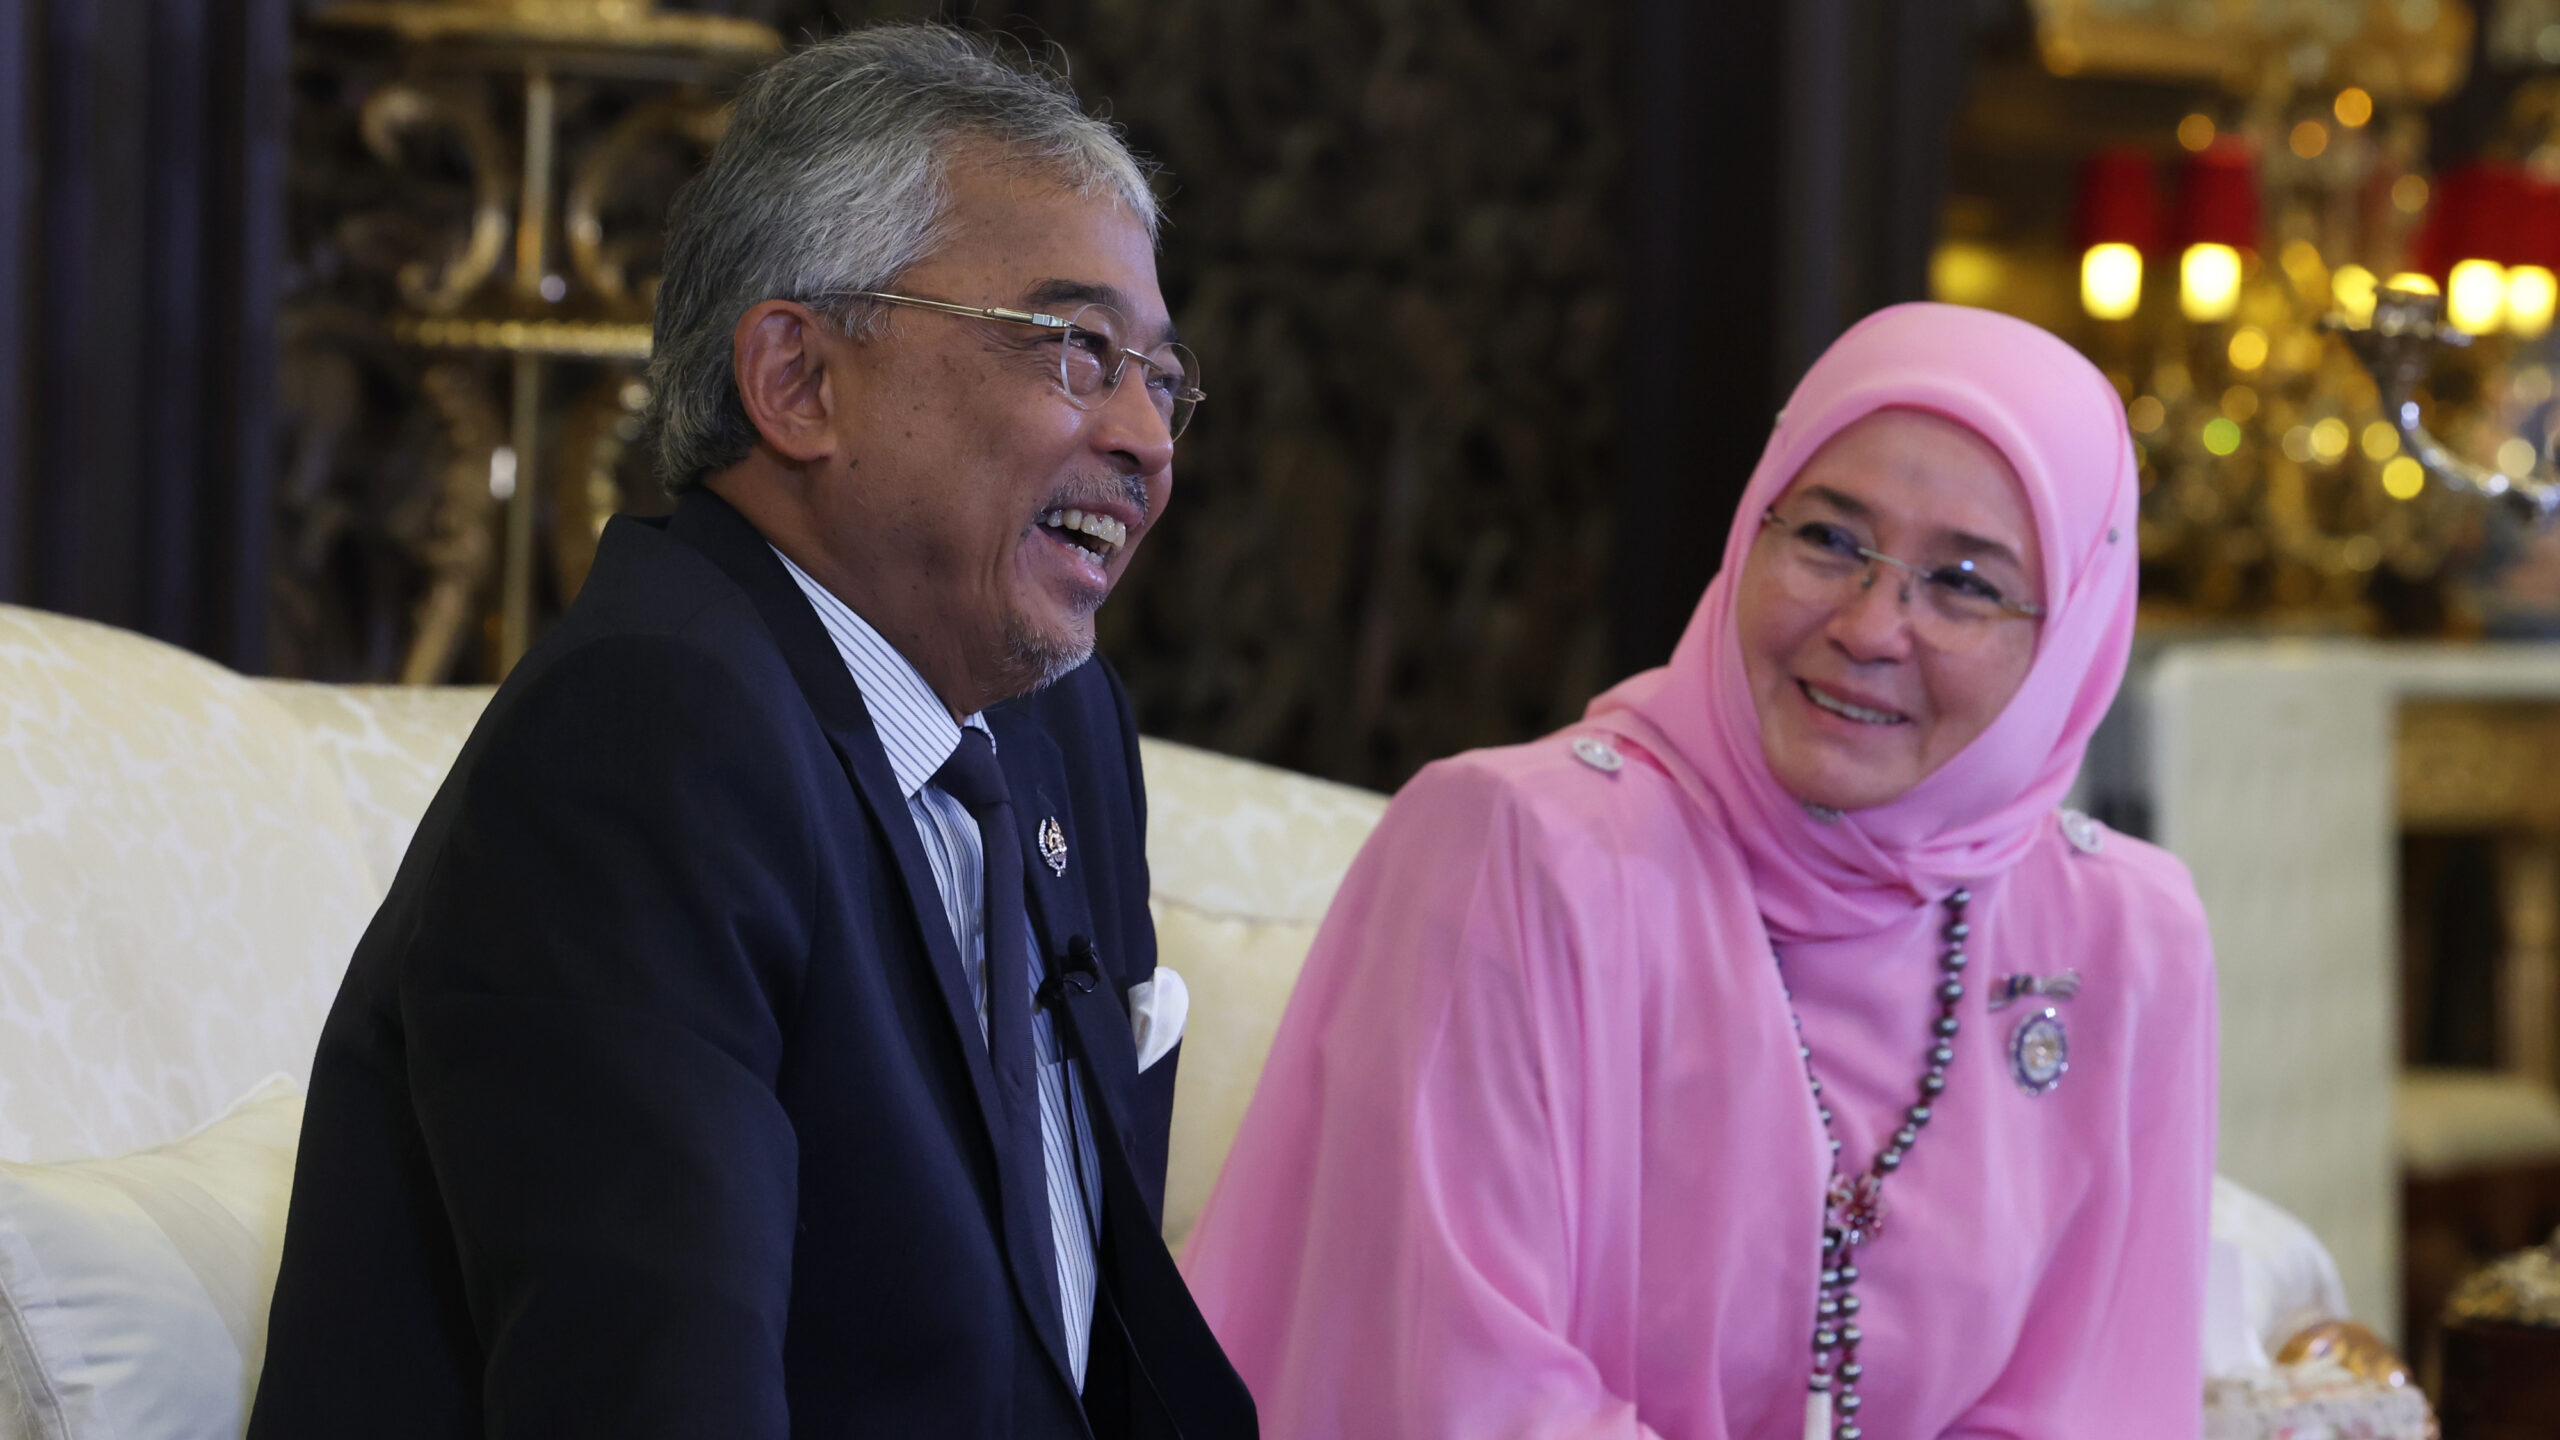 Tempoh pemerintahan tamat, Al-Sultan Abdullah berangkat balik ke Pahang hari ini